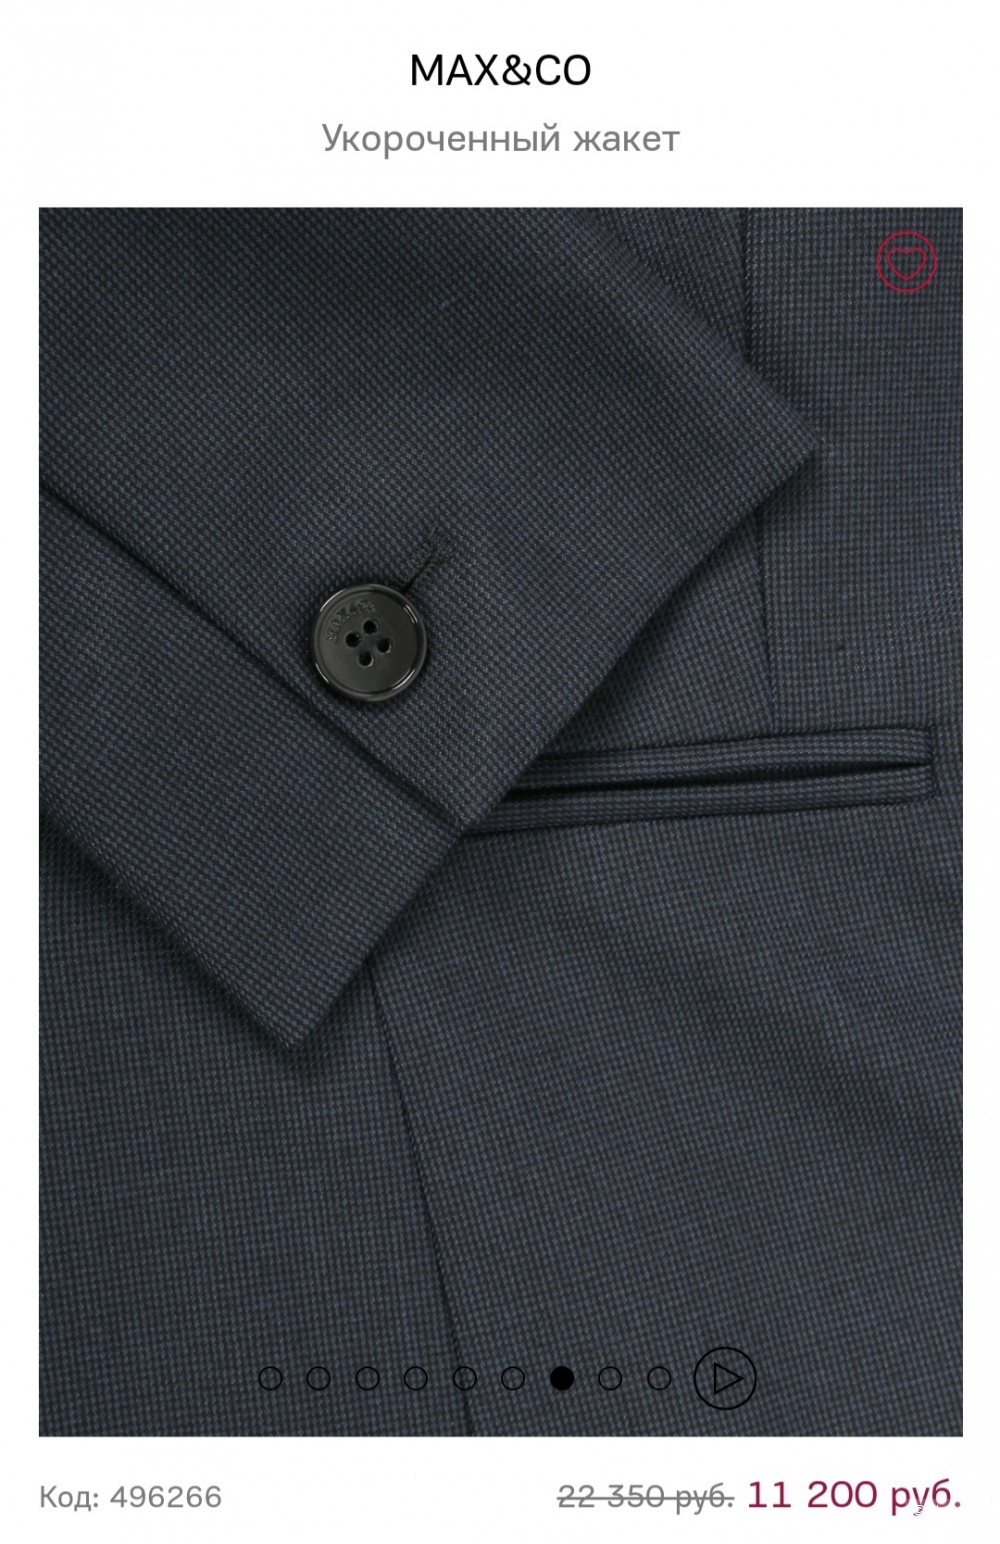 Пиджак max&co,42-44 размер